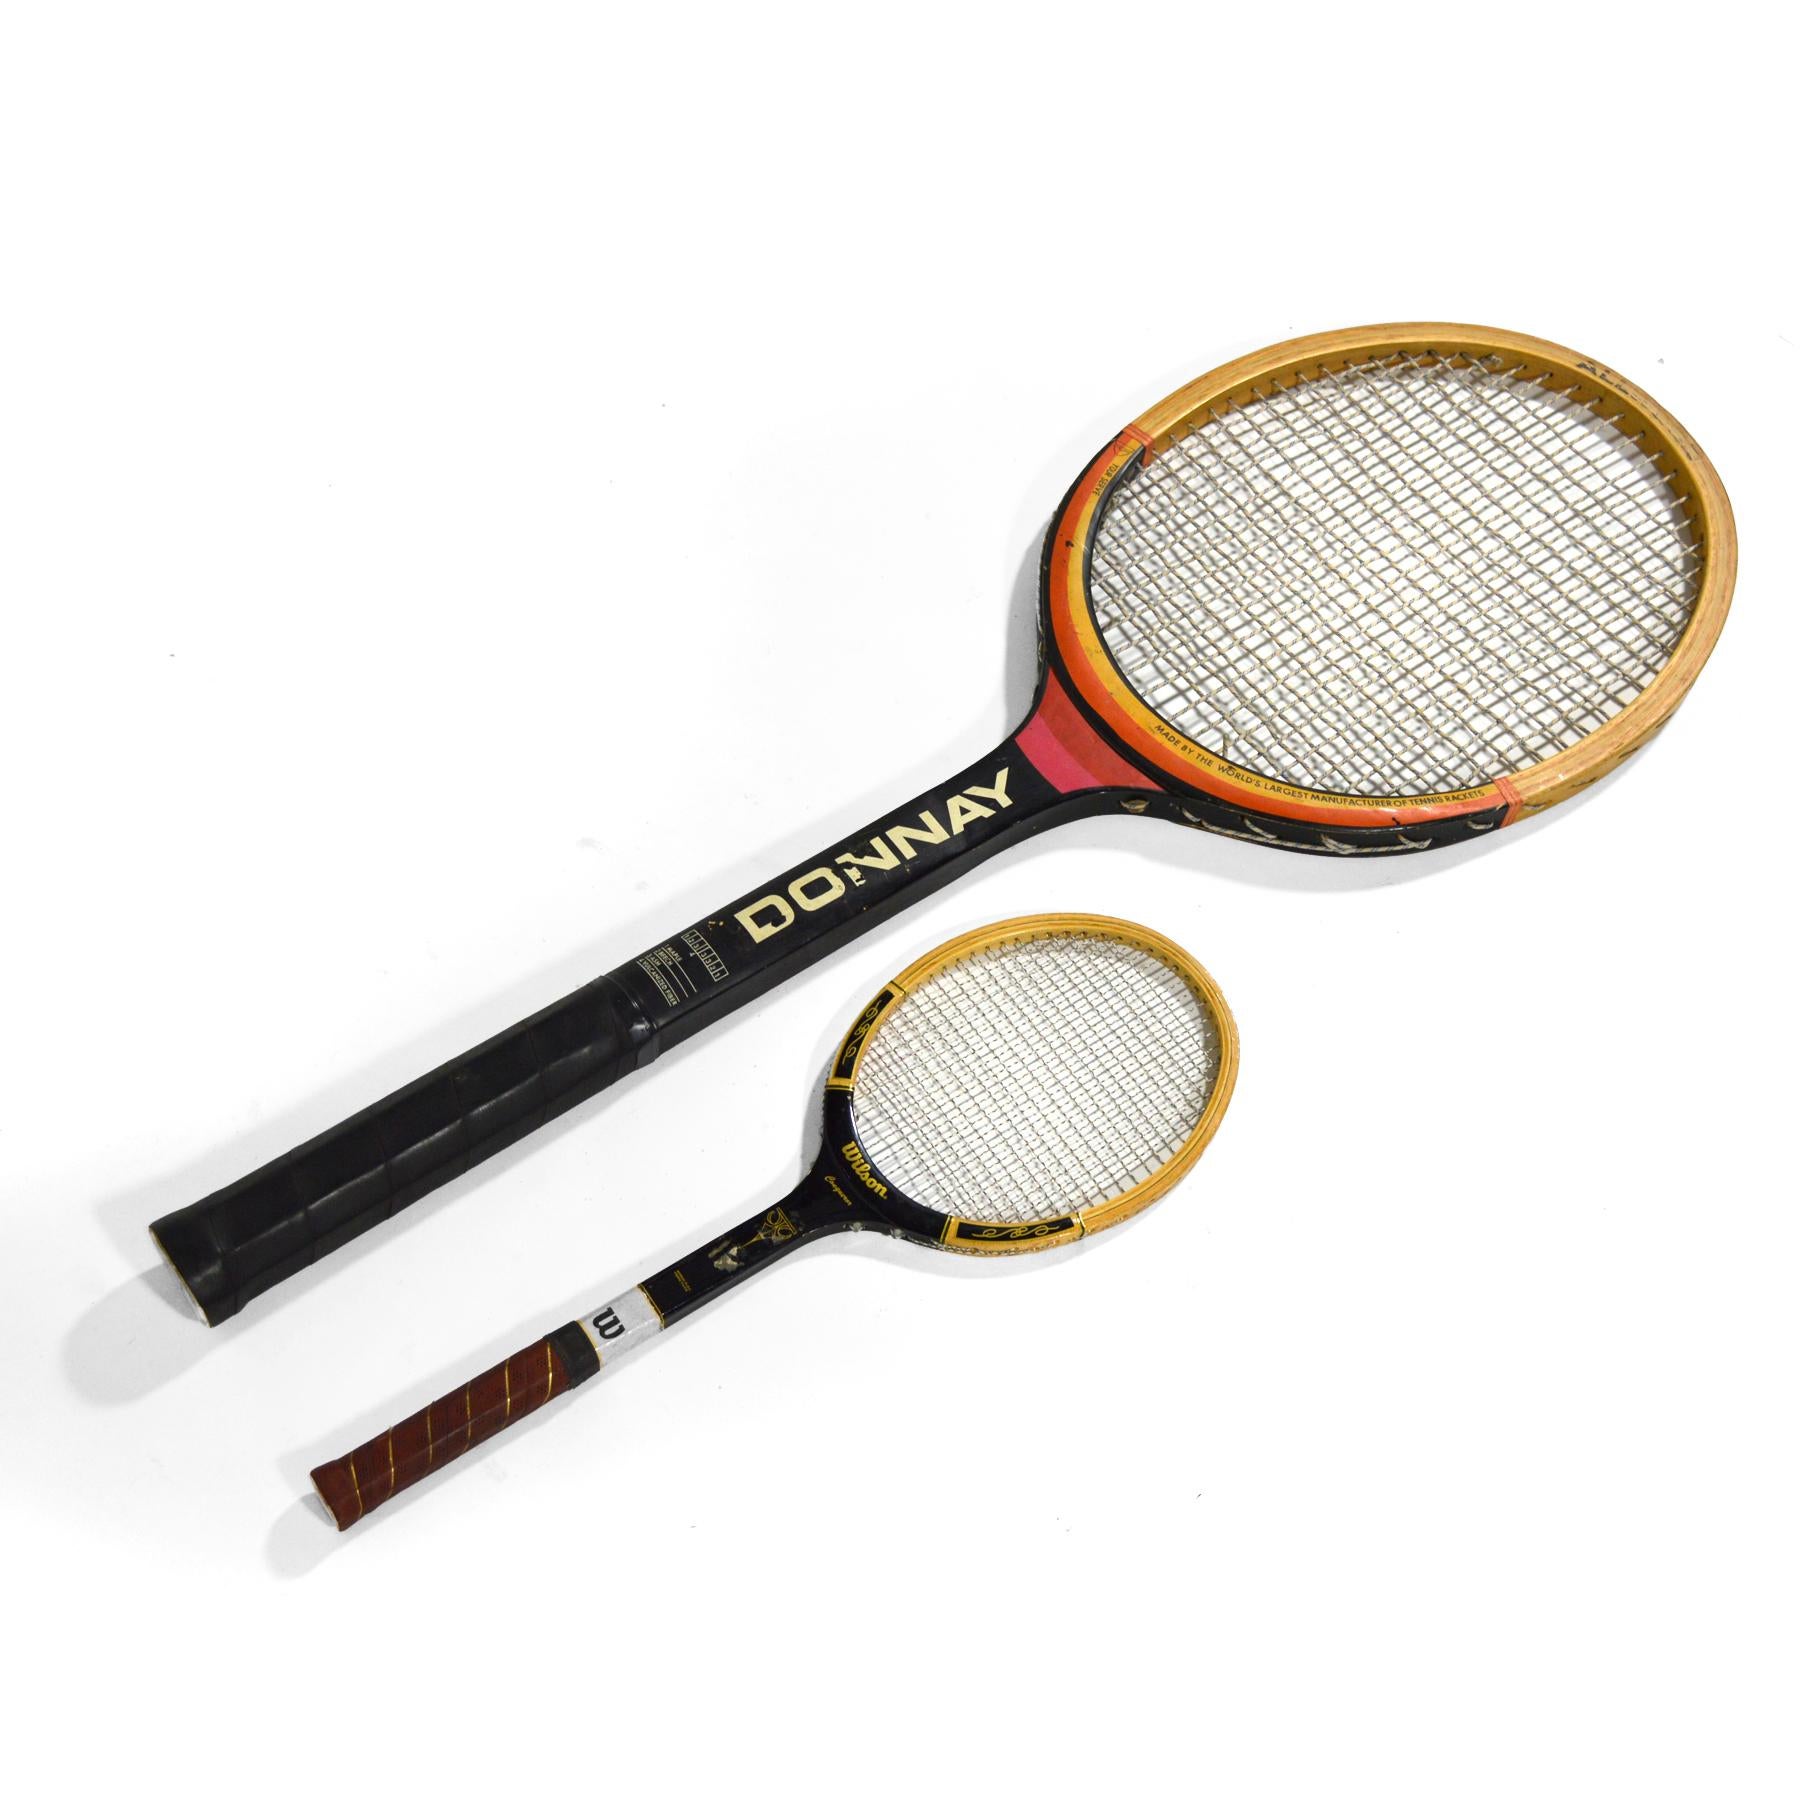 giant tennis racket prop